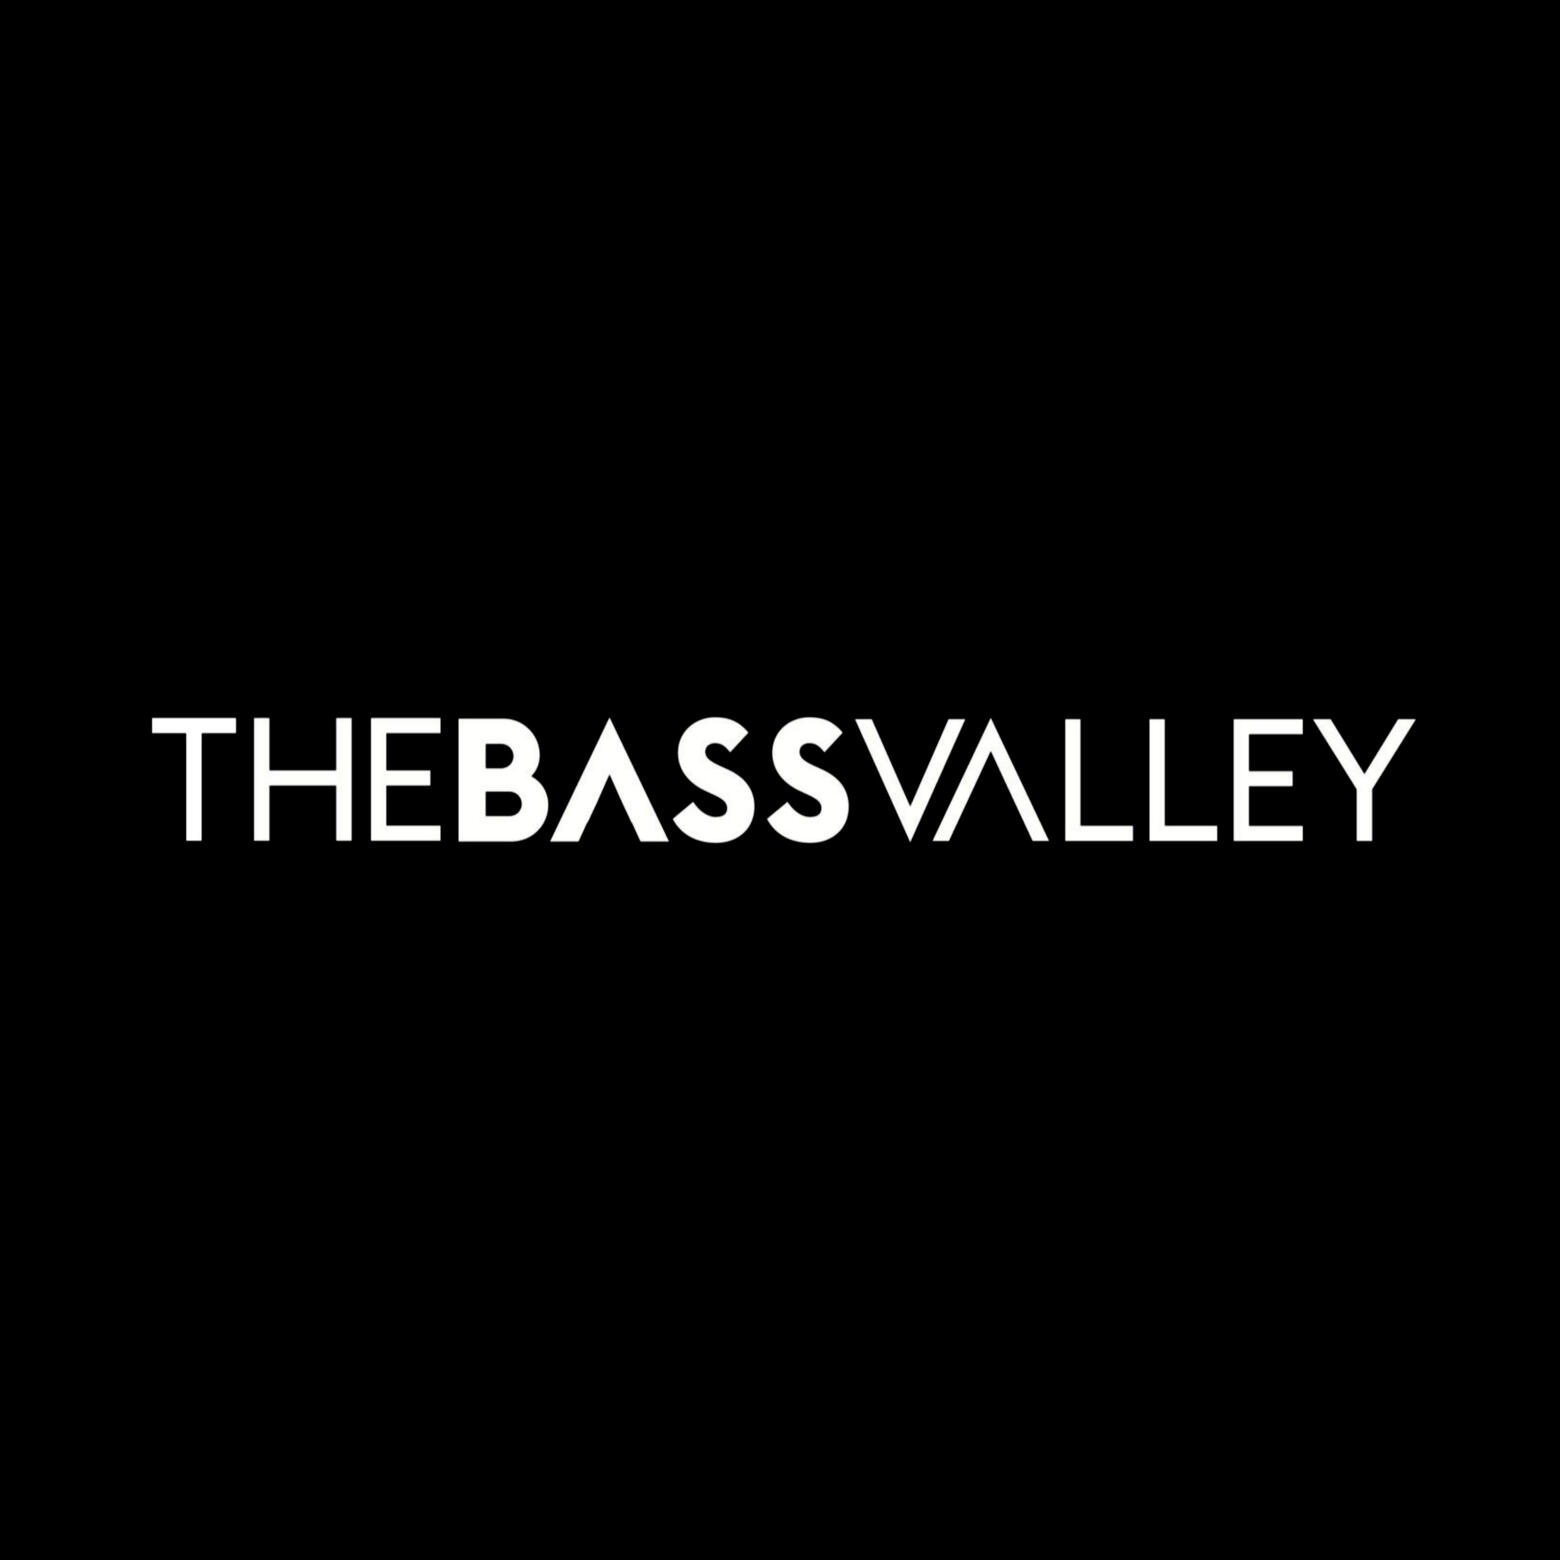 Logotipo oficial TheBassValley en blanco sobre fondo negro